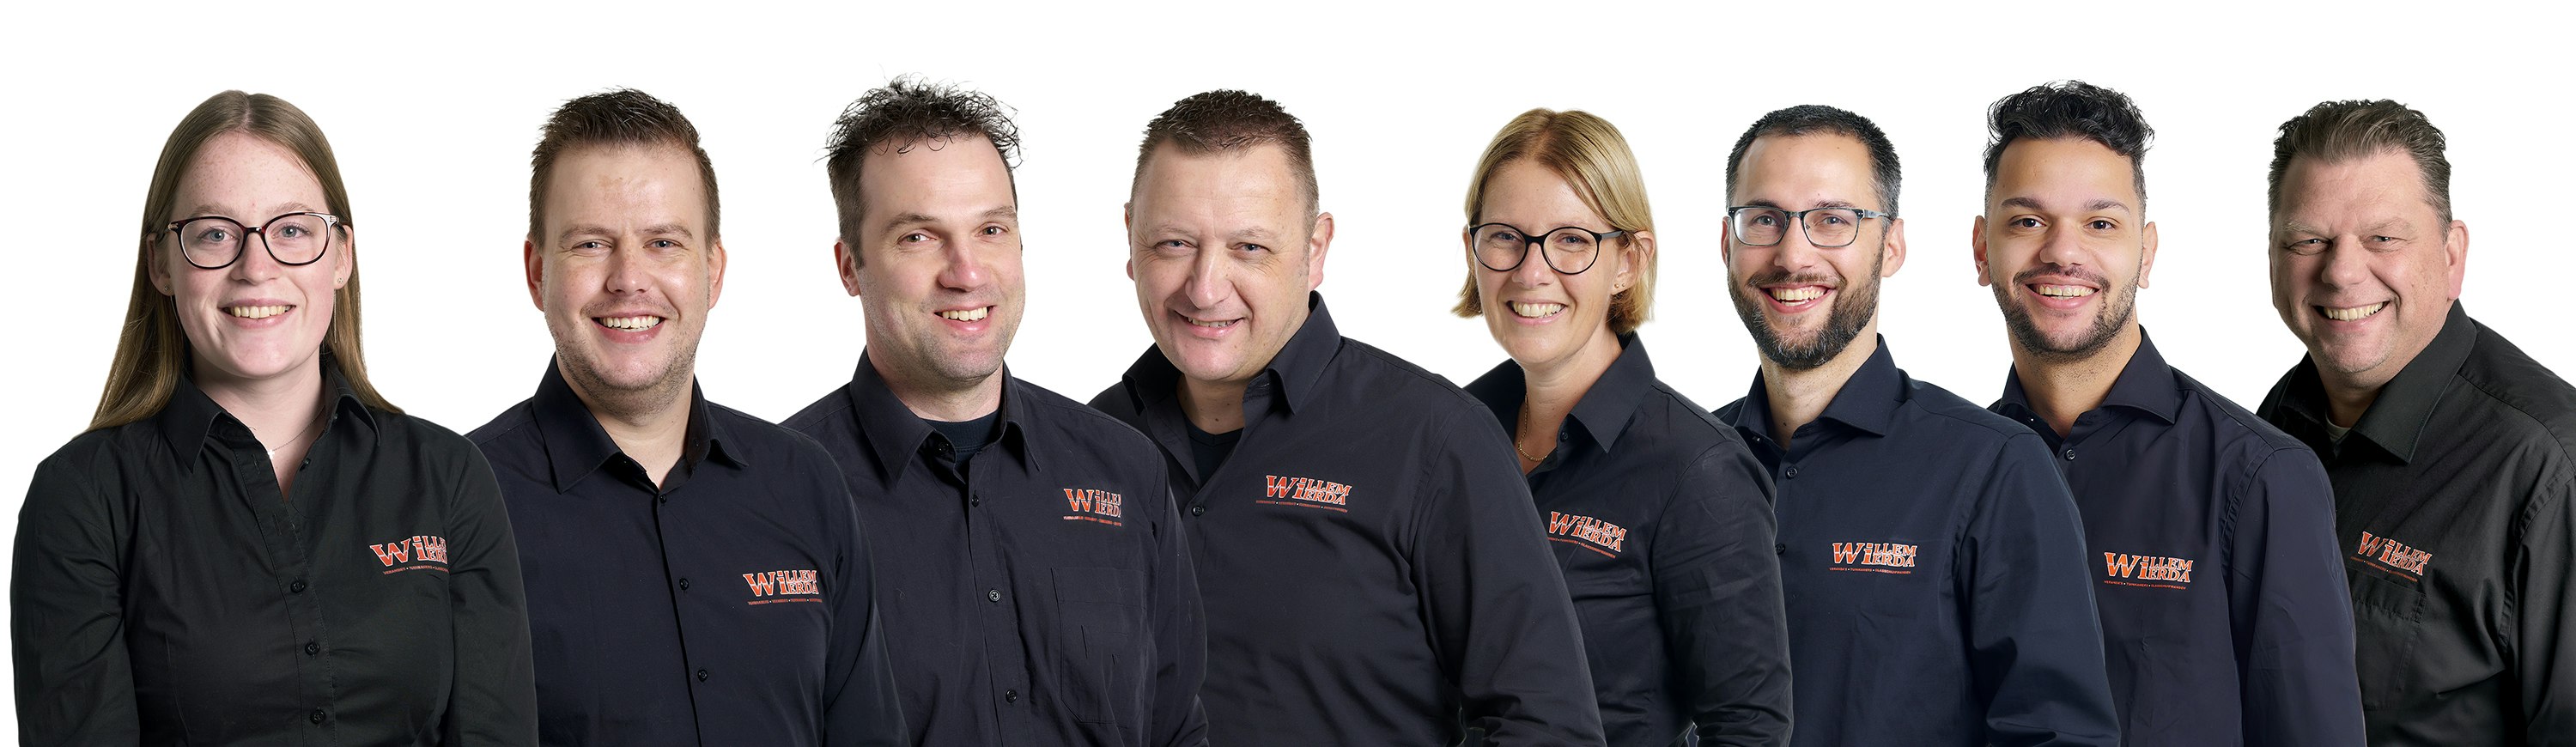 Willem Wierda team